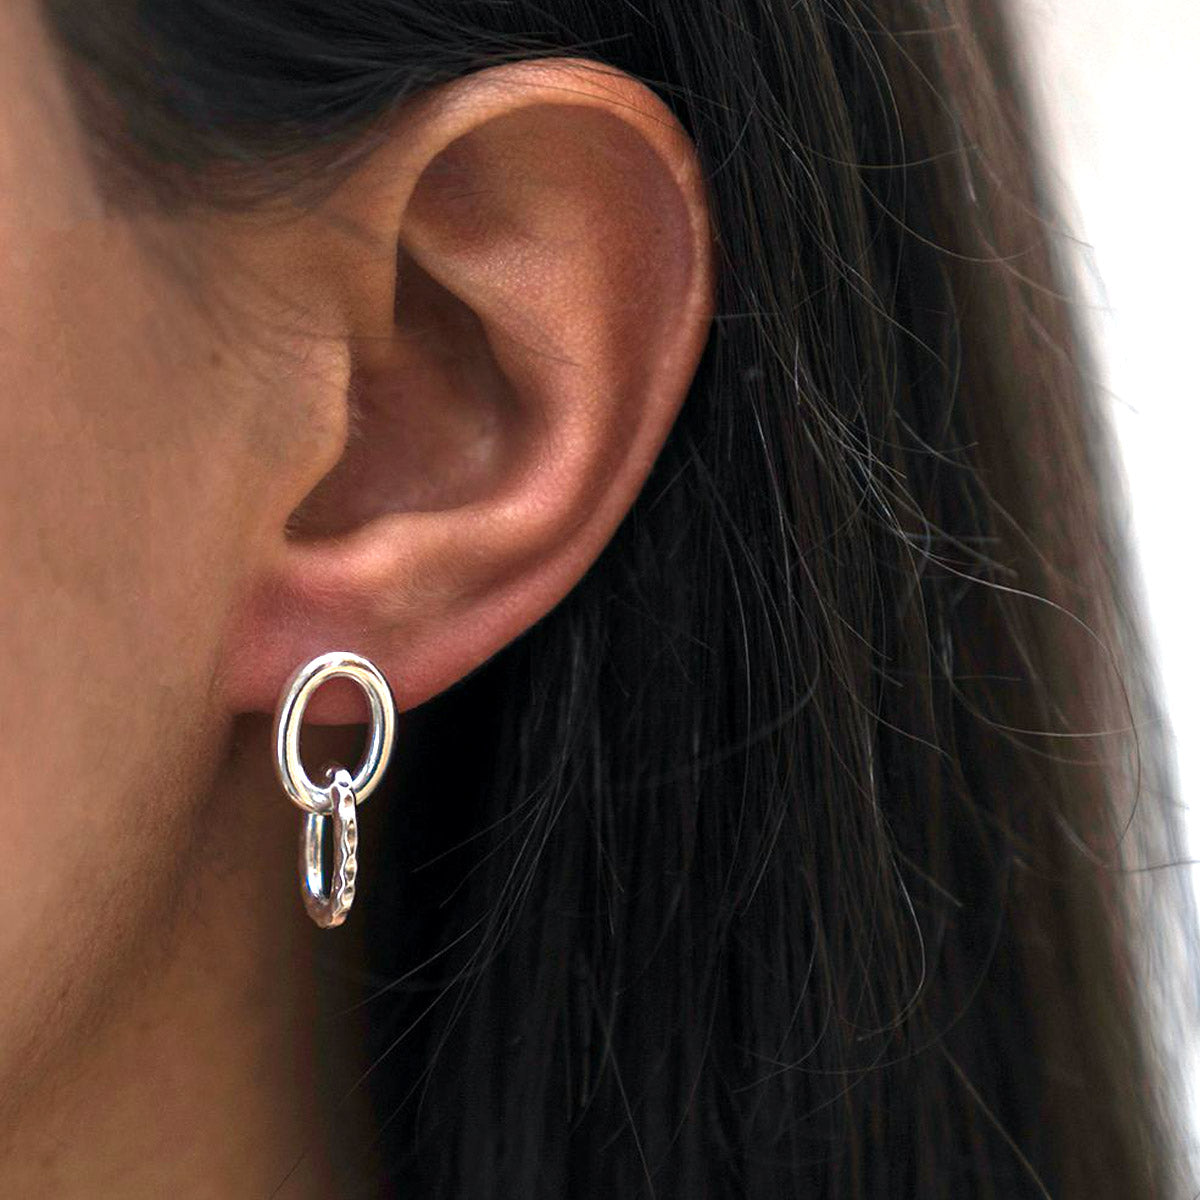 Silver double link earrings.